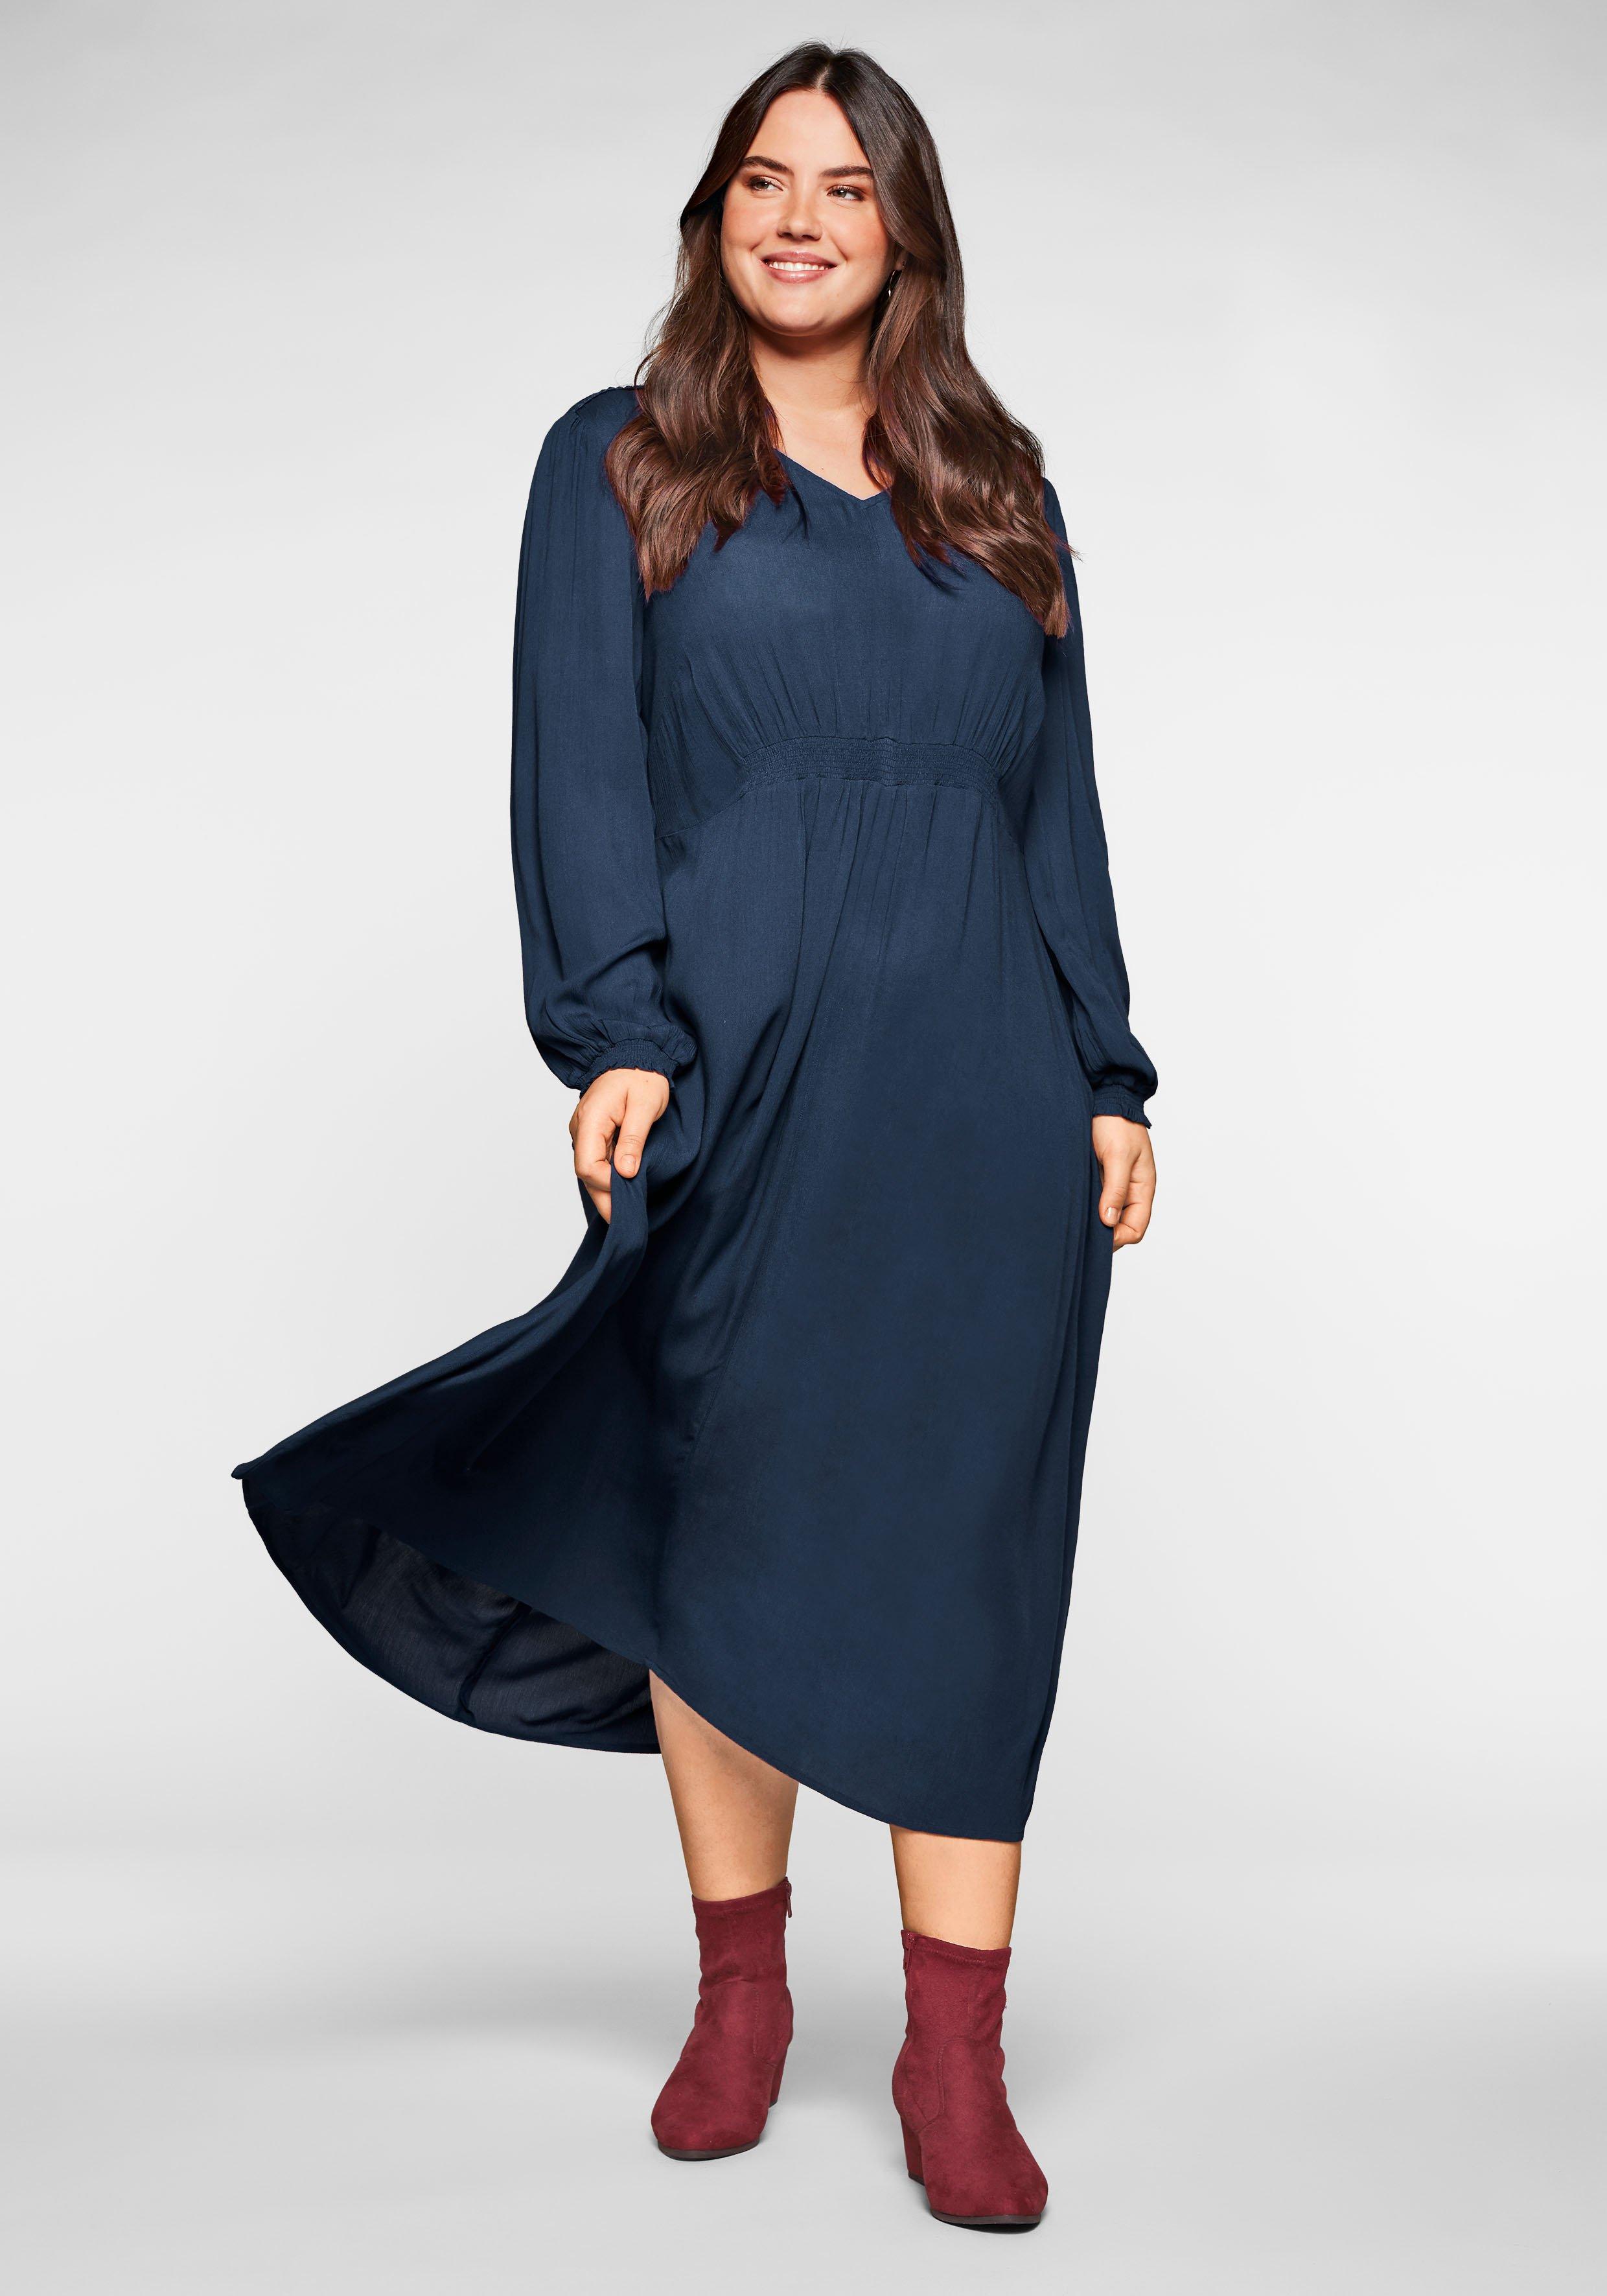 Kleid in Crêpe-Qualität, mit Smok-Einsätzen - nachtblau | sheego